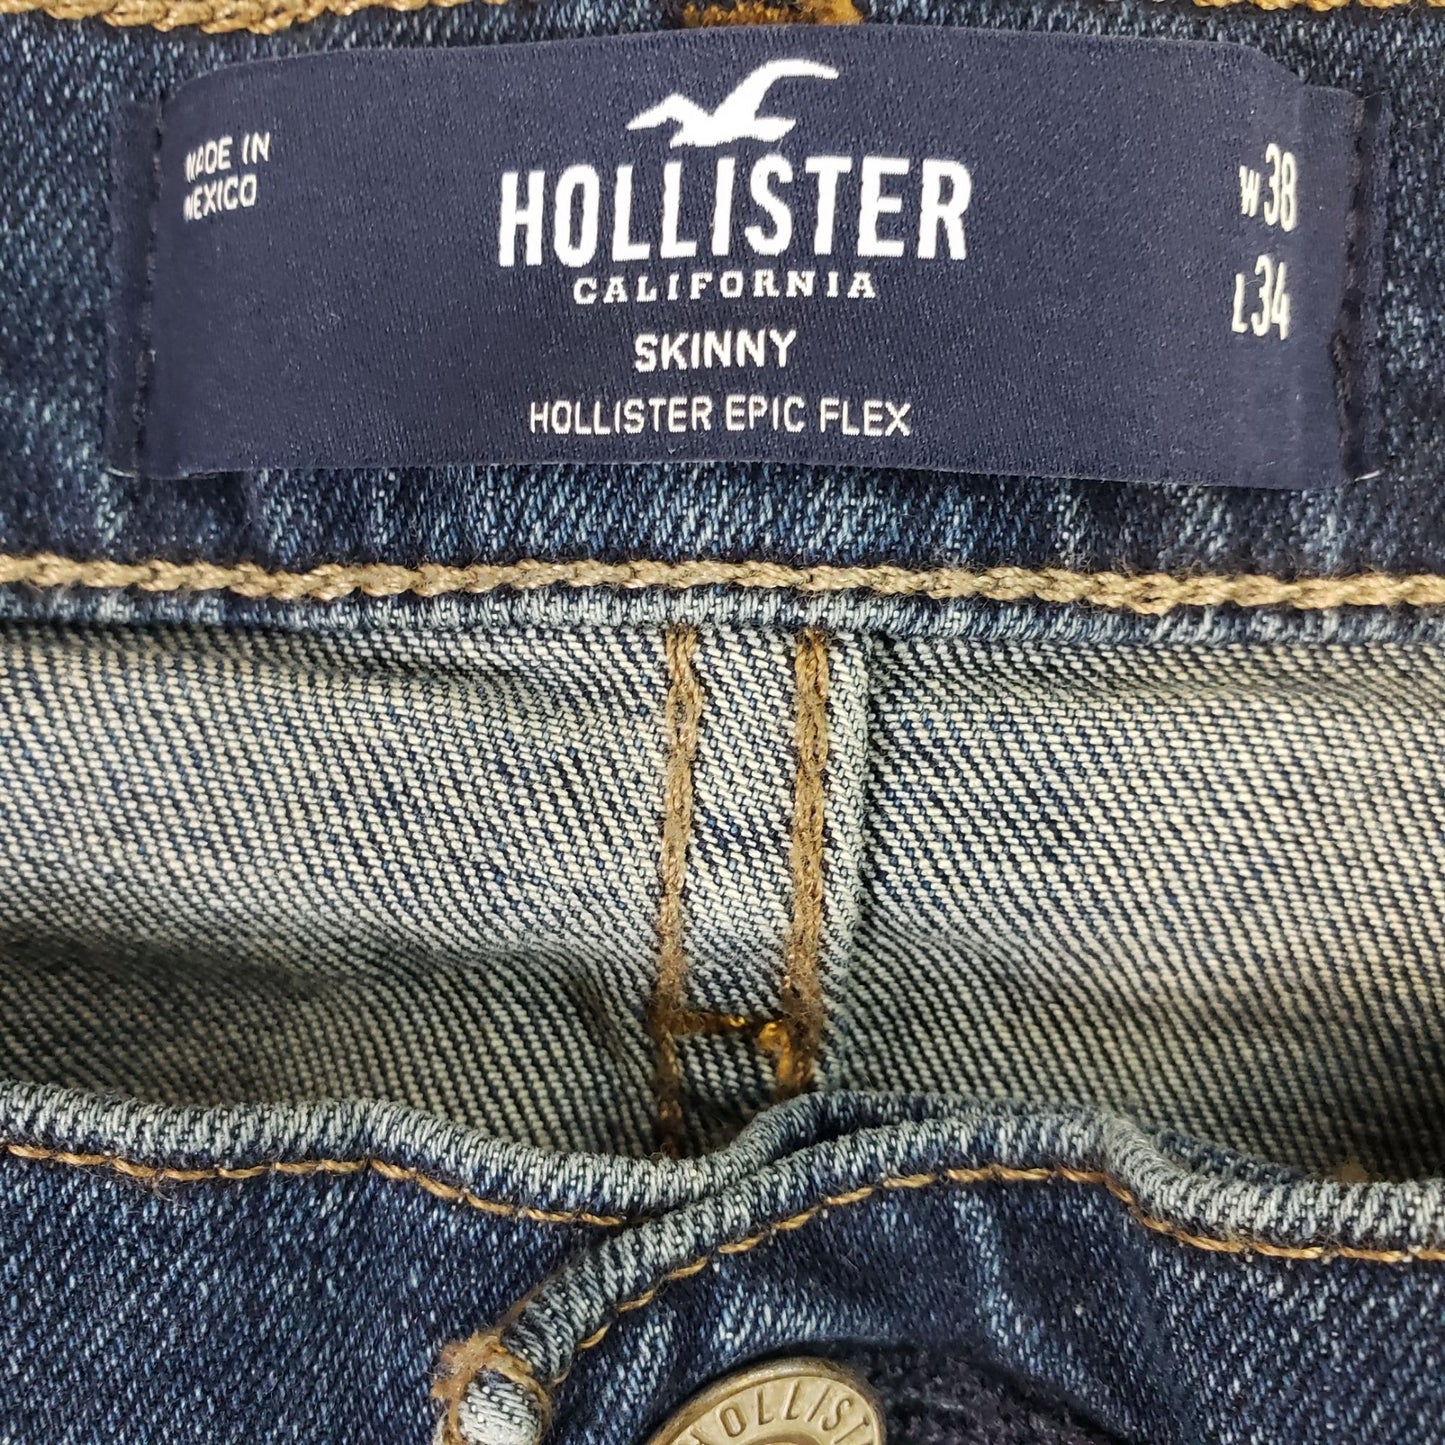 NWT Hollister Epic Flex Skinny Jeans Size 38x34